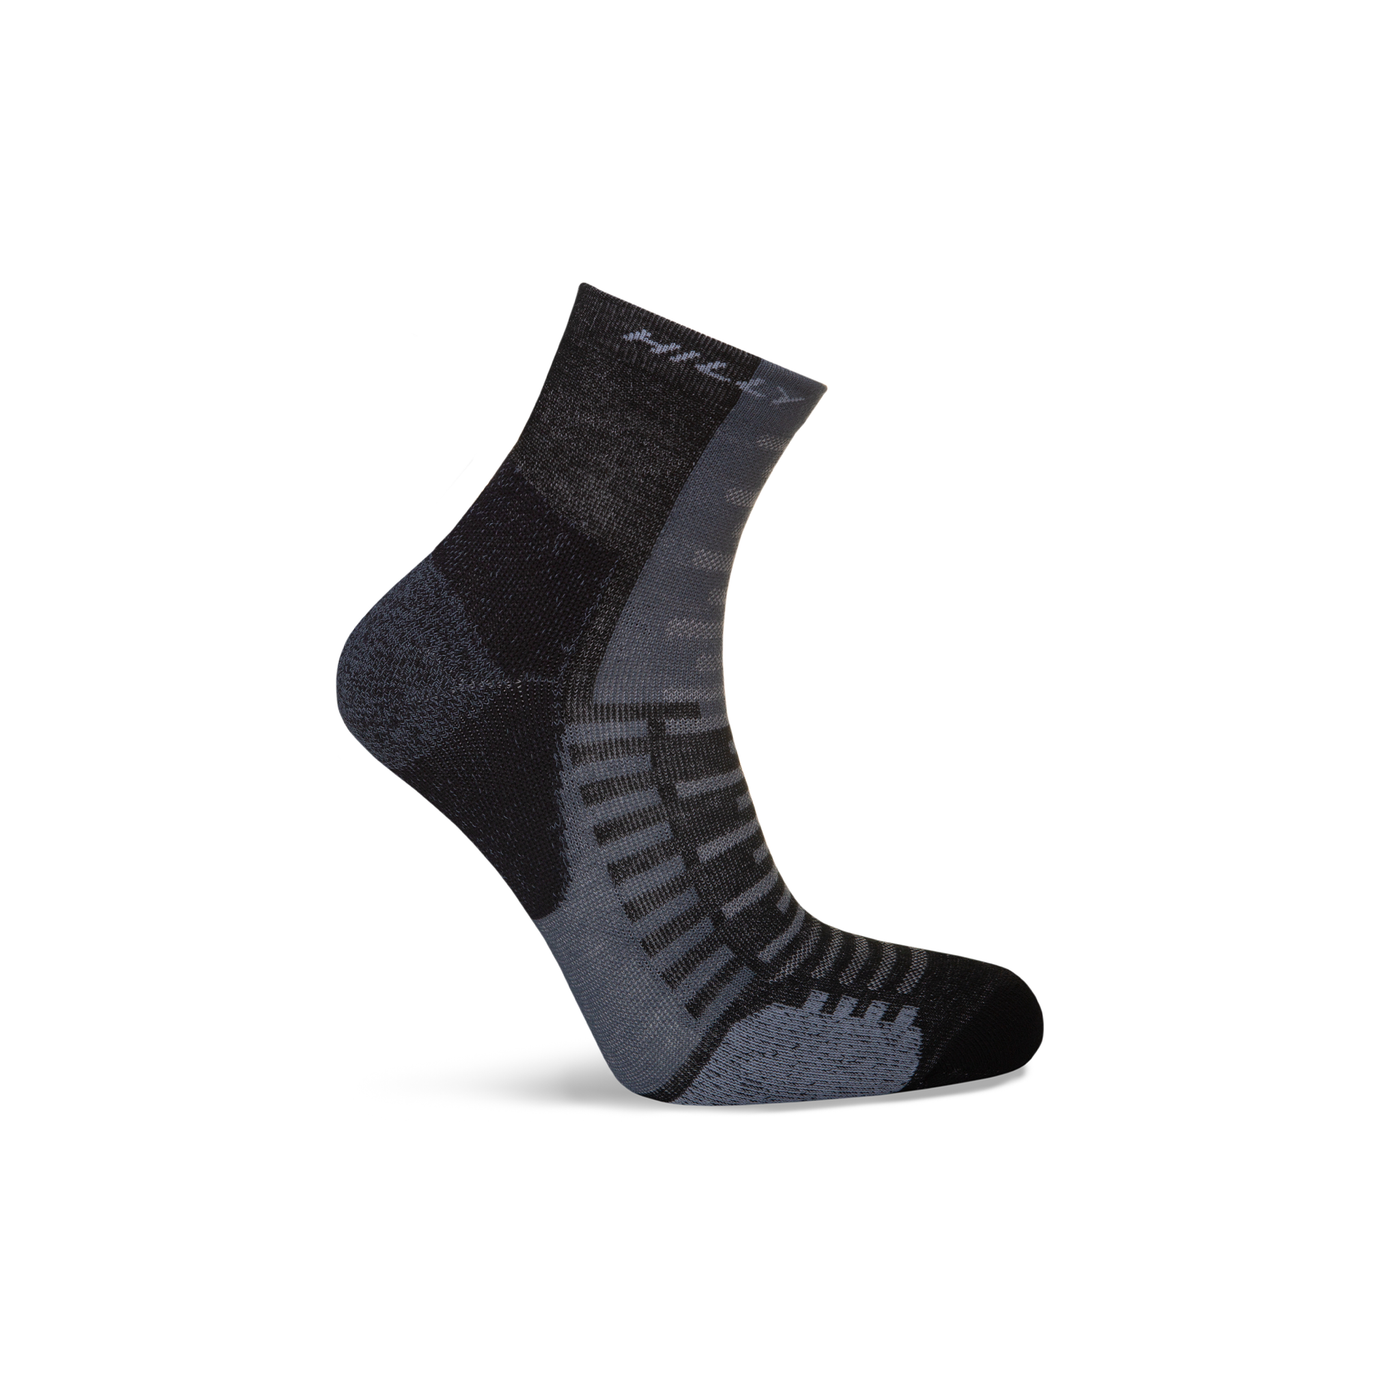 Hilly Active Anklet Min - Black/Grey